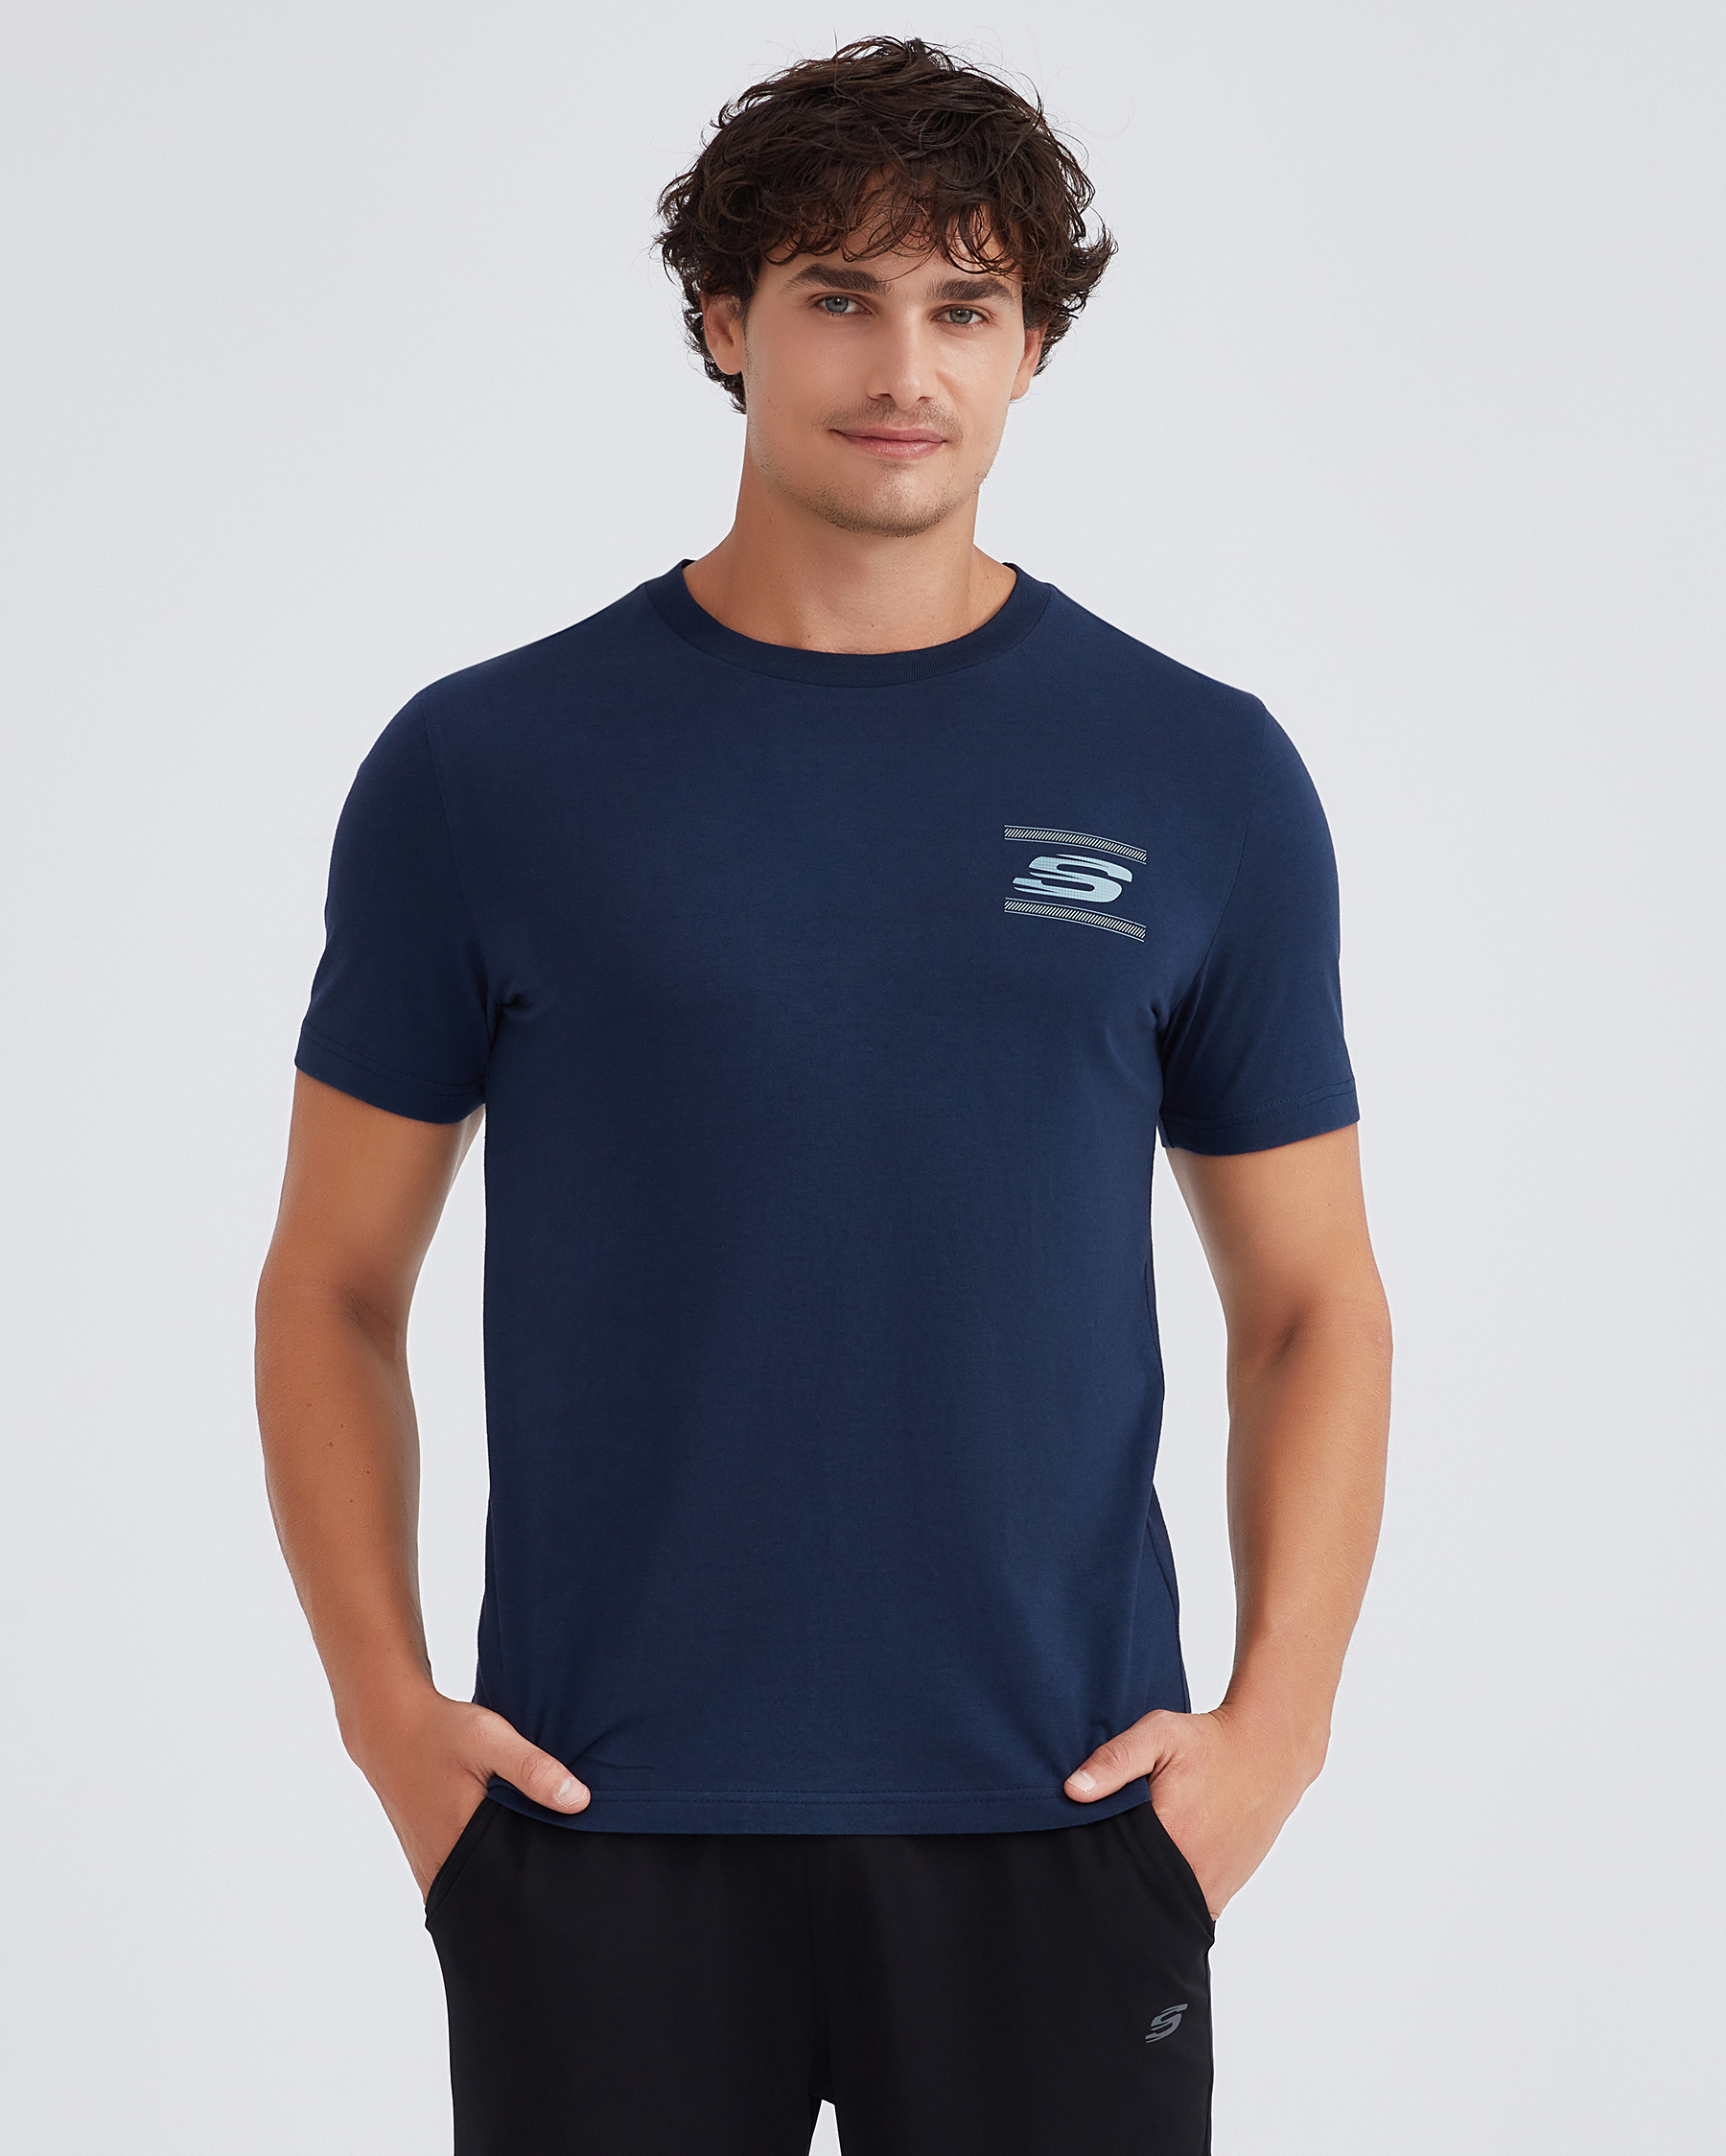 Skechers M Graphic Tee Crew Neck T-shirt Erkek Lacivert Tshirt S232339-410